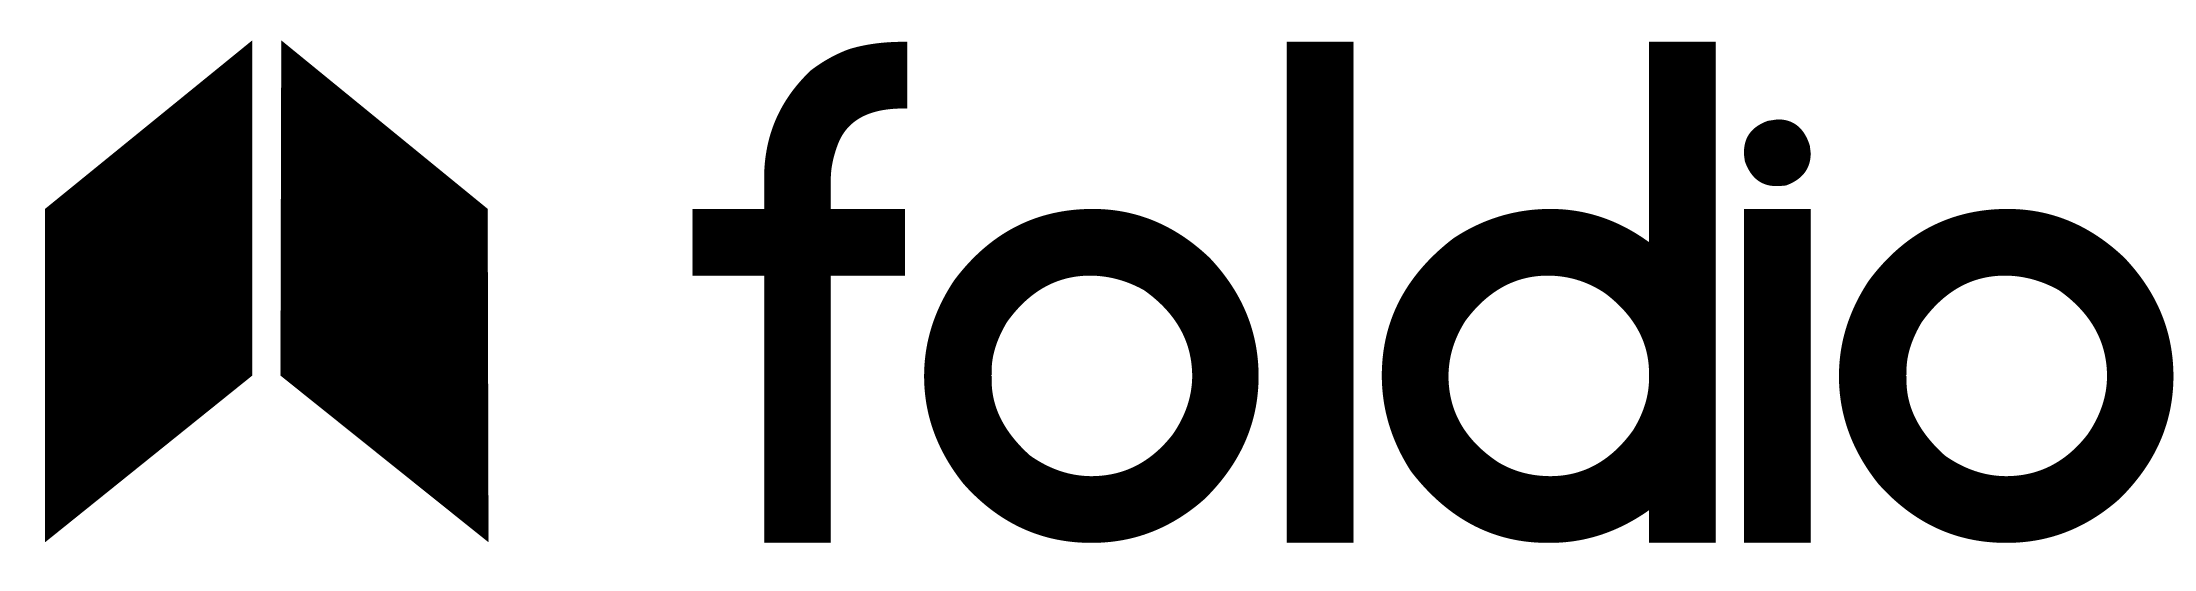 Foldio | Ürün Çekim Çadırı – Smart Turntable Akıllı Döner Tabla – 360 Derece Ürün Fotoğraf/Video Çekimi – Ürün Fotoğraf Çekme Çadırı – Ürün Fotoğraf Çekimi-360 Derece Ürün Çekimi